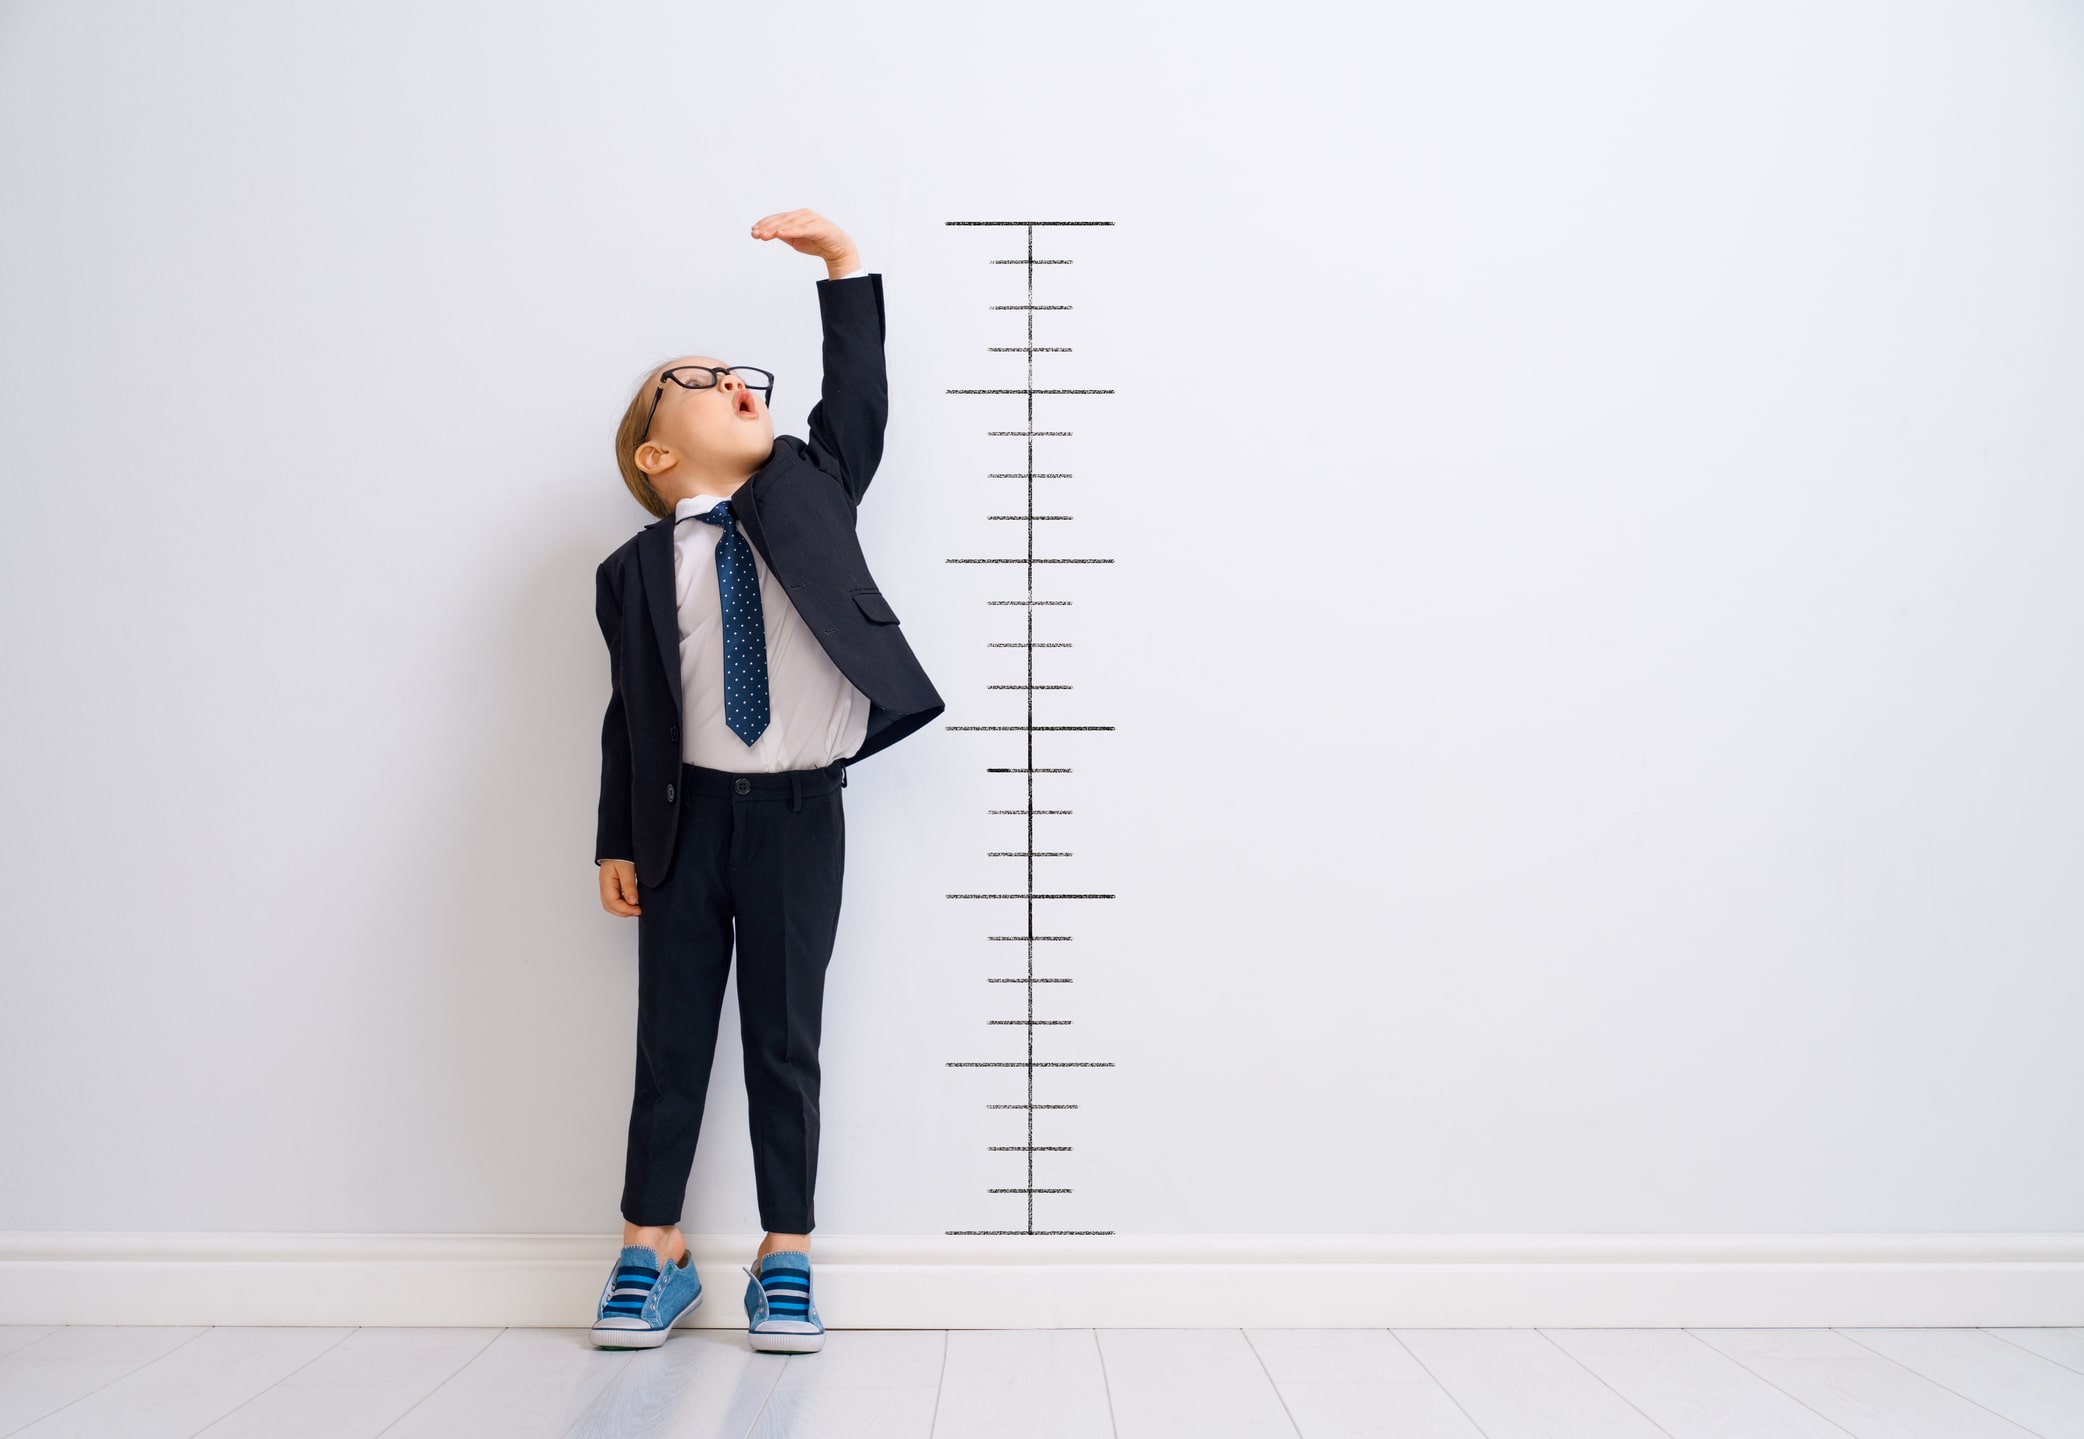 Imagen de un niño midiendo su altura en una pared. Simboliza los dolores de crecimiento frecuentes en la niñez y la adolescencia